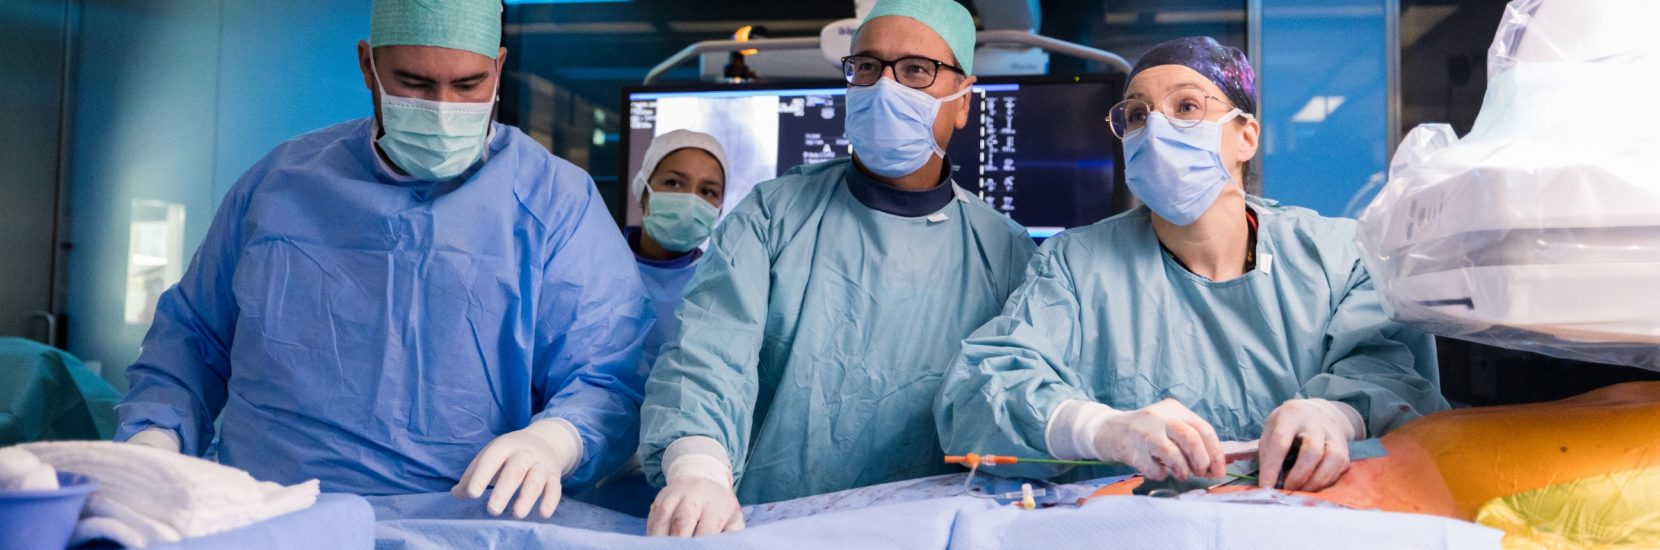 Un anévrisme complexe de l’aorte abdominale opéré avec succès par chirurgie endovasculaire au CHL